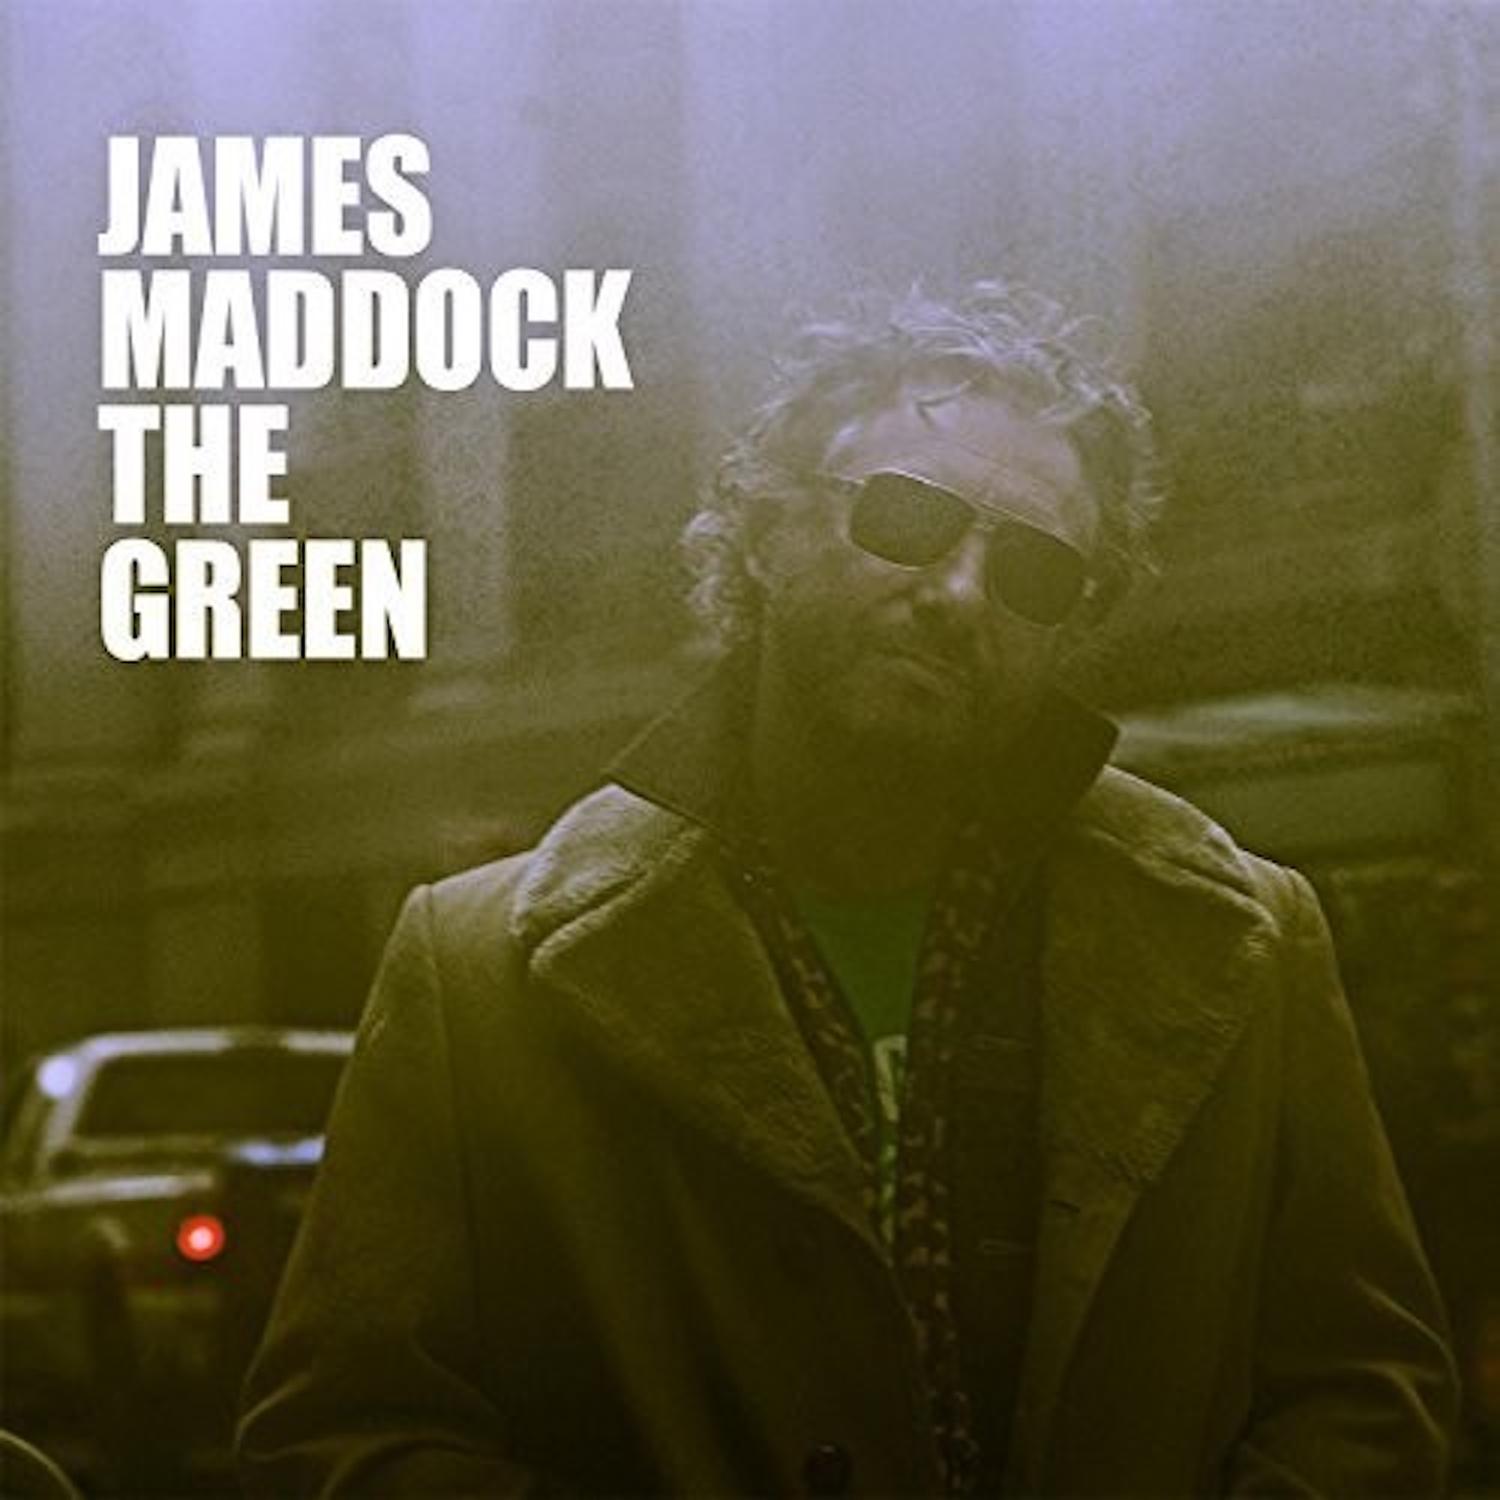 James Maddock - Crash by Design